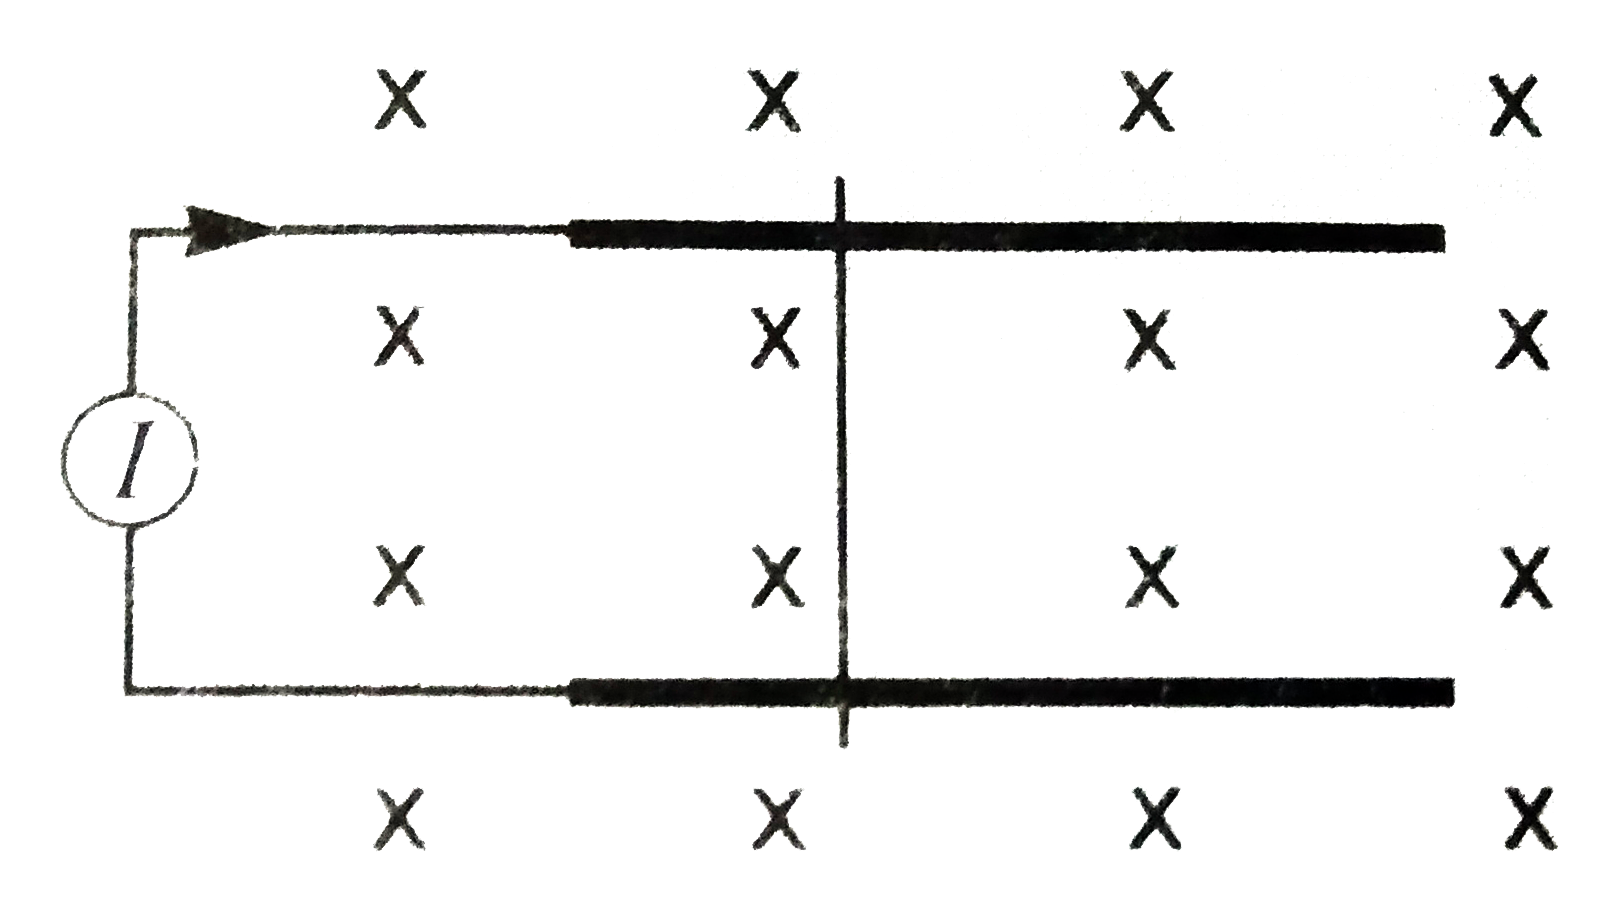 चित्र में दो लम्बाई समांतर पटरियों के बीच दुरी L है। एकसमान चुंबकीय क्षेत्र B कागज के तल के लंबवत नीचे की ओर दिष्ट है। पटरियां नियत धारा स्त्रोत I से जुडी है। m द्रव्यमान का एक तार पटरियों पर फिसल सकता है। तार व पटरियों के बीच घर्षण गुणांक mu है      (A) mu का न्यूनतम मान क्या हो जिससे तार पटरियों पर न फिसले?   (B) यदि mu का मान आधा हो जाये तो तार की गति कैसी होगी?